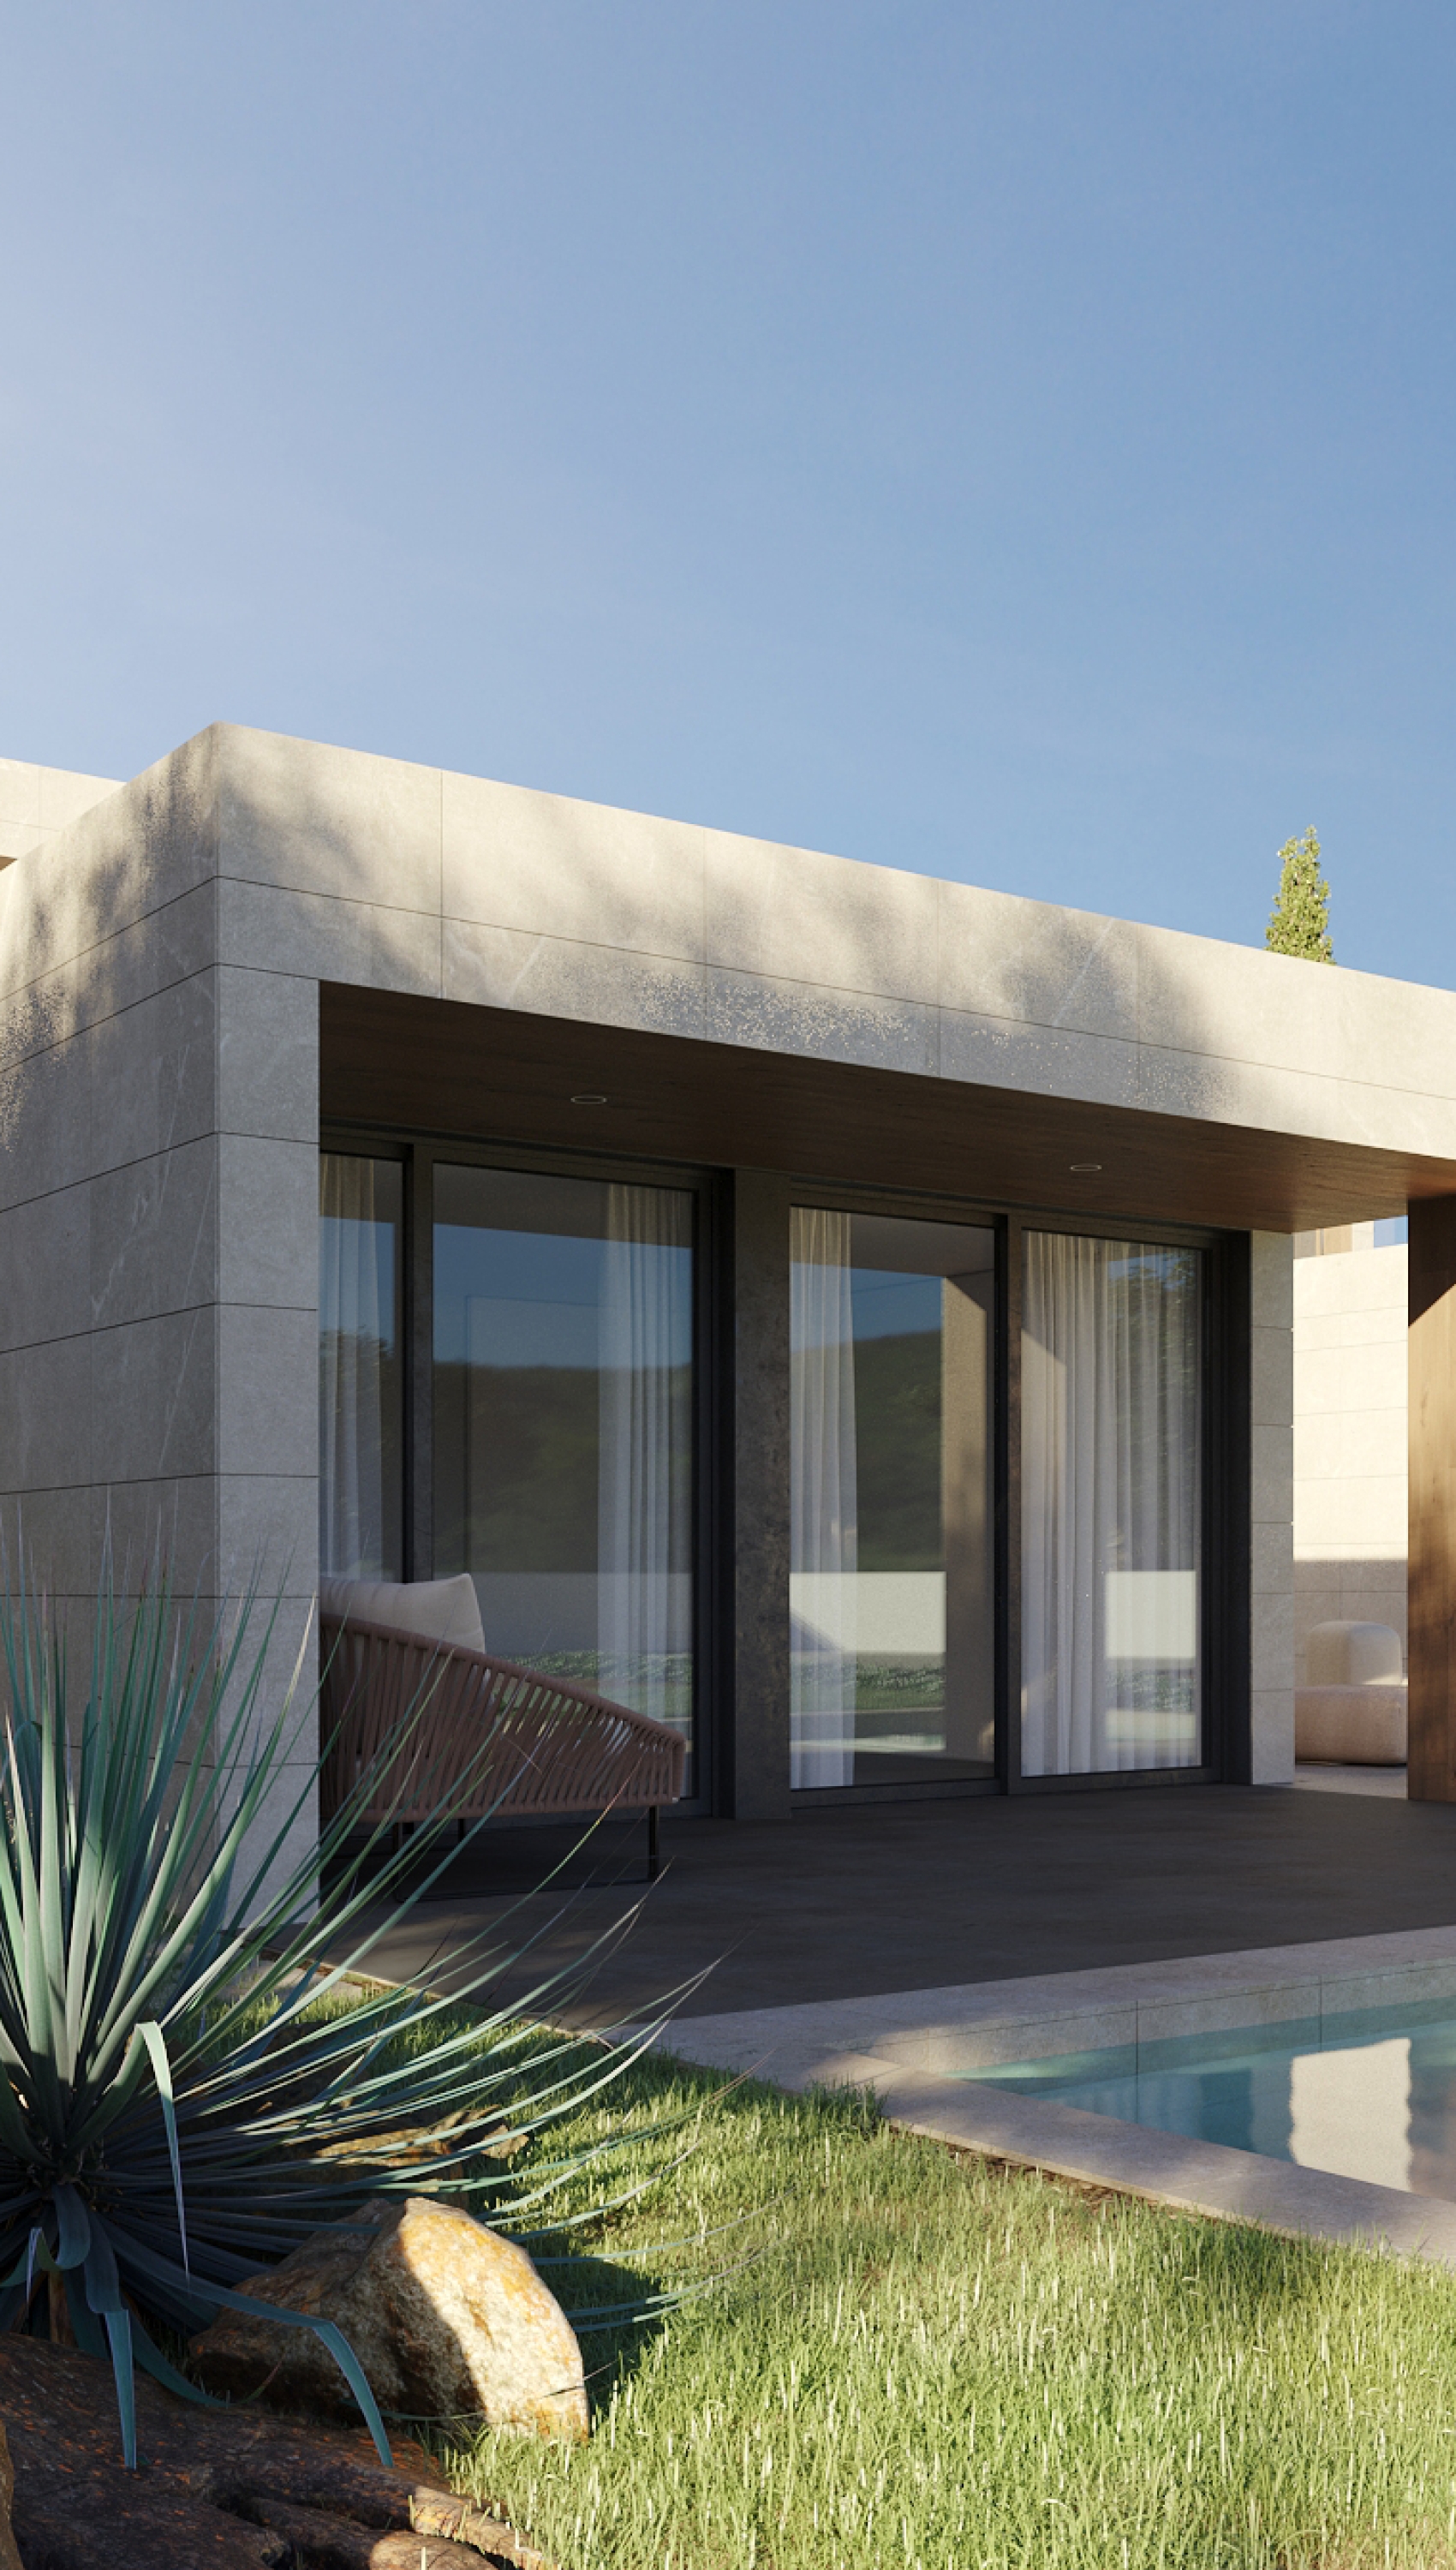 Casa modular de estilo moderno lujoso en Madrid con piscina y zona chill-out exterior